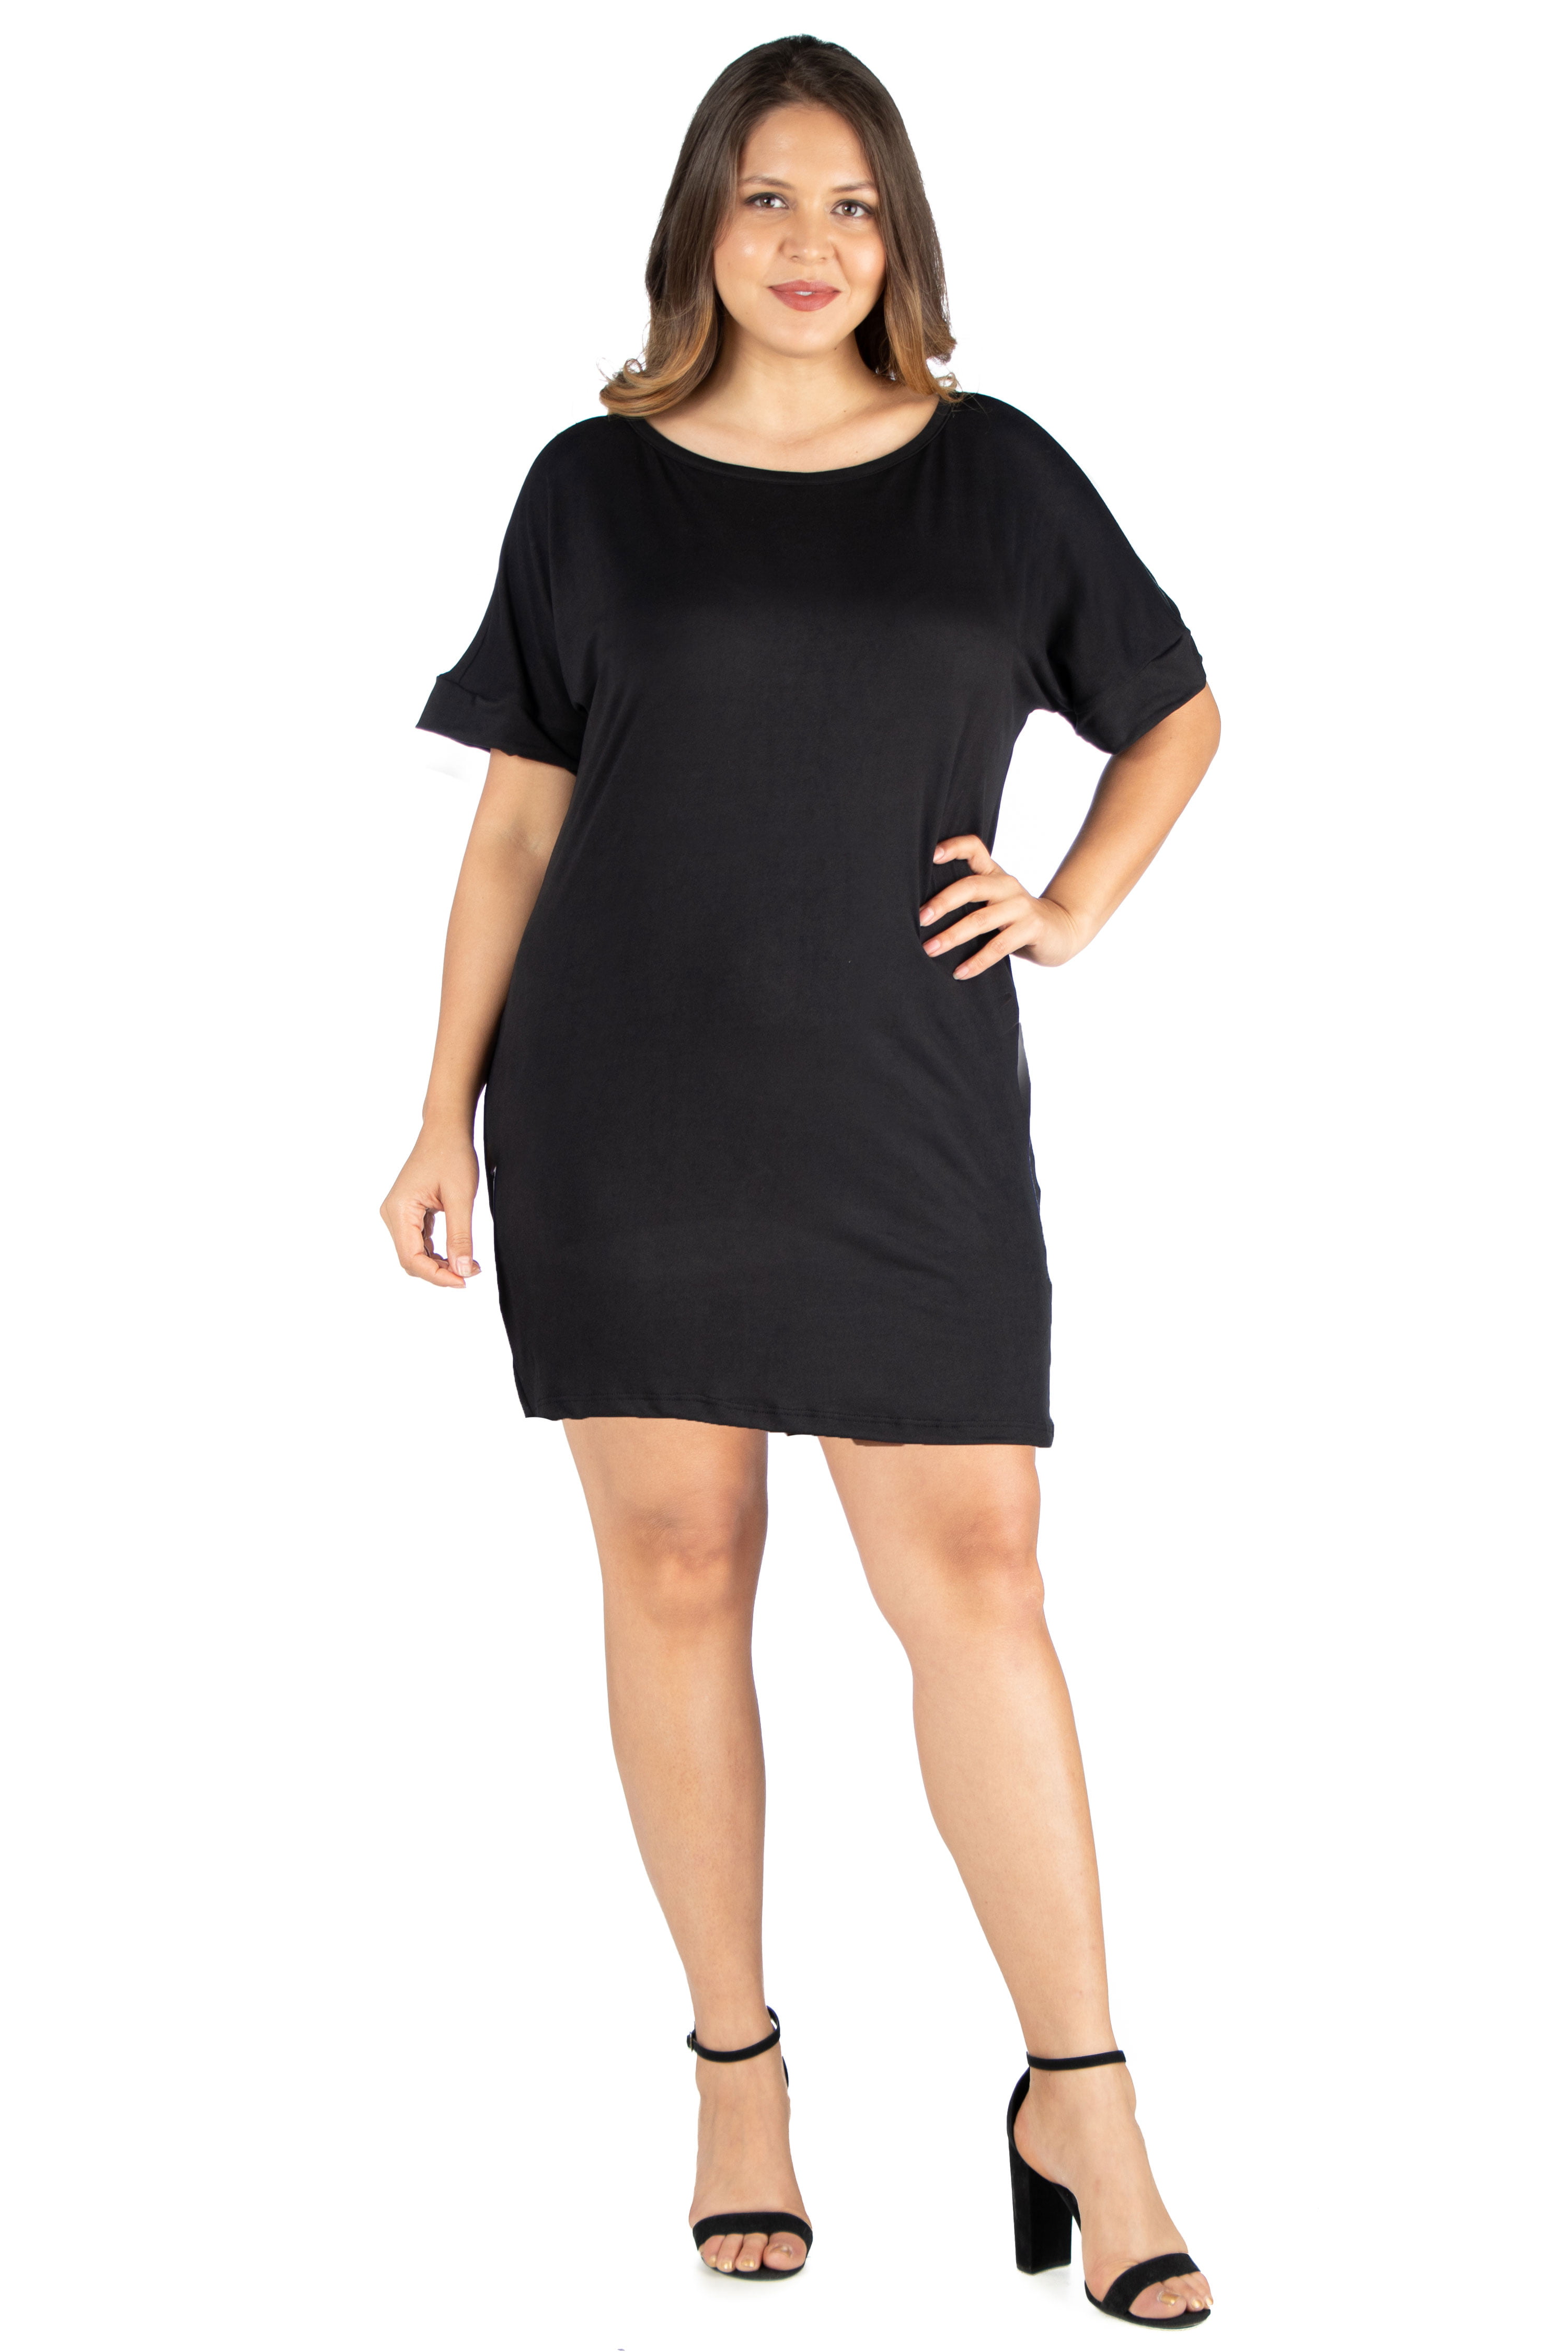 Stylish Ladies Dress V Neck Sleeveless Knee Lenght Tunic Sizes 8-20 8125 